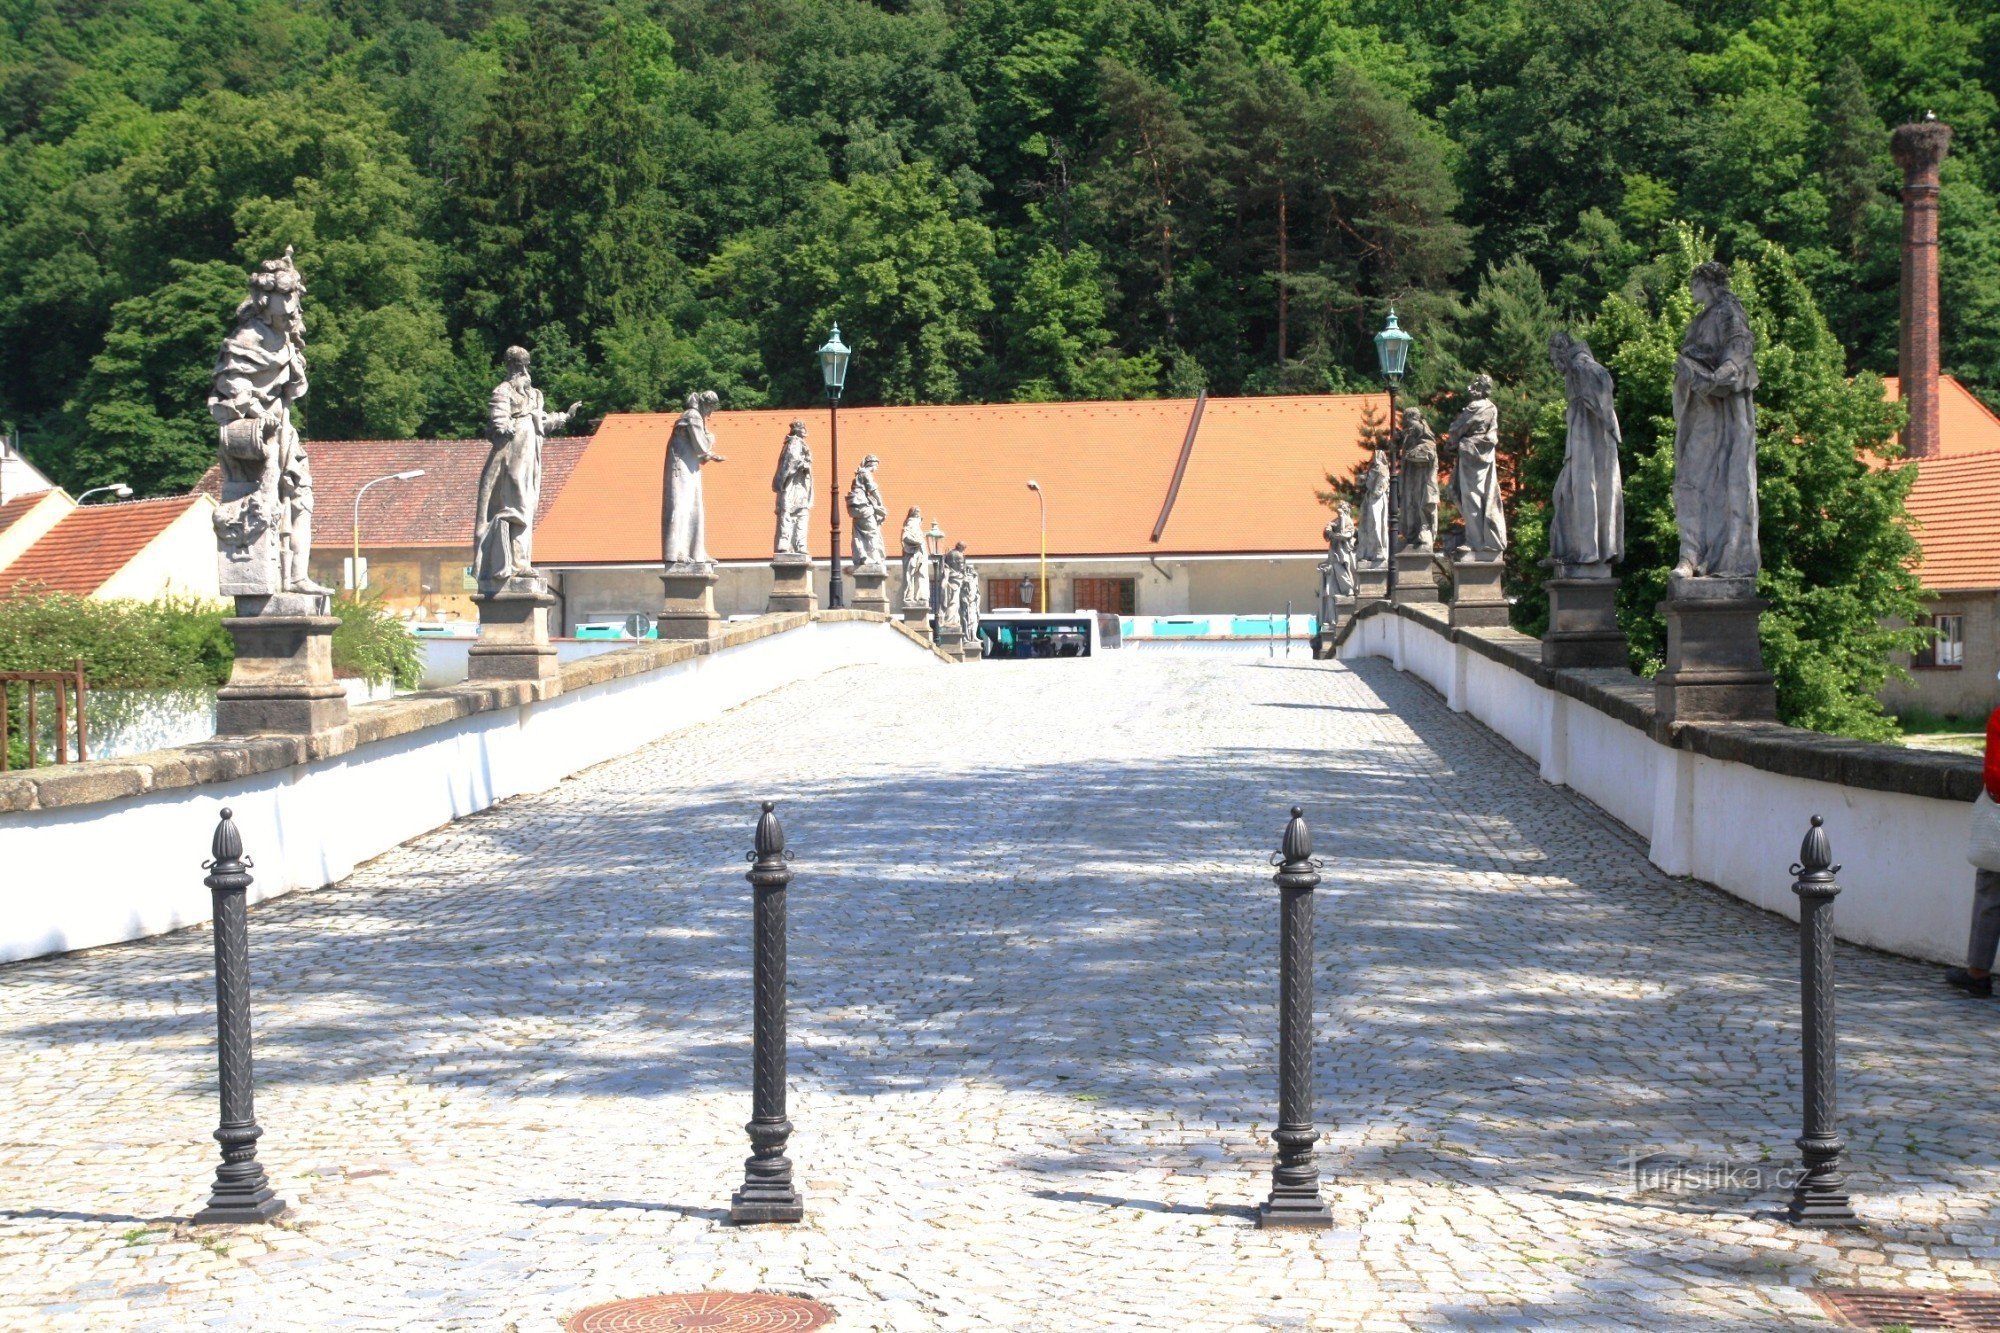 Náměšť nad Oslavou - baroque stone bridge 2011